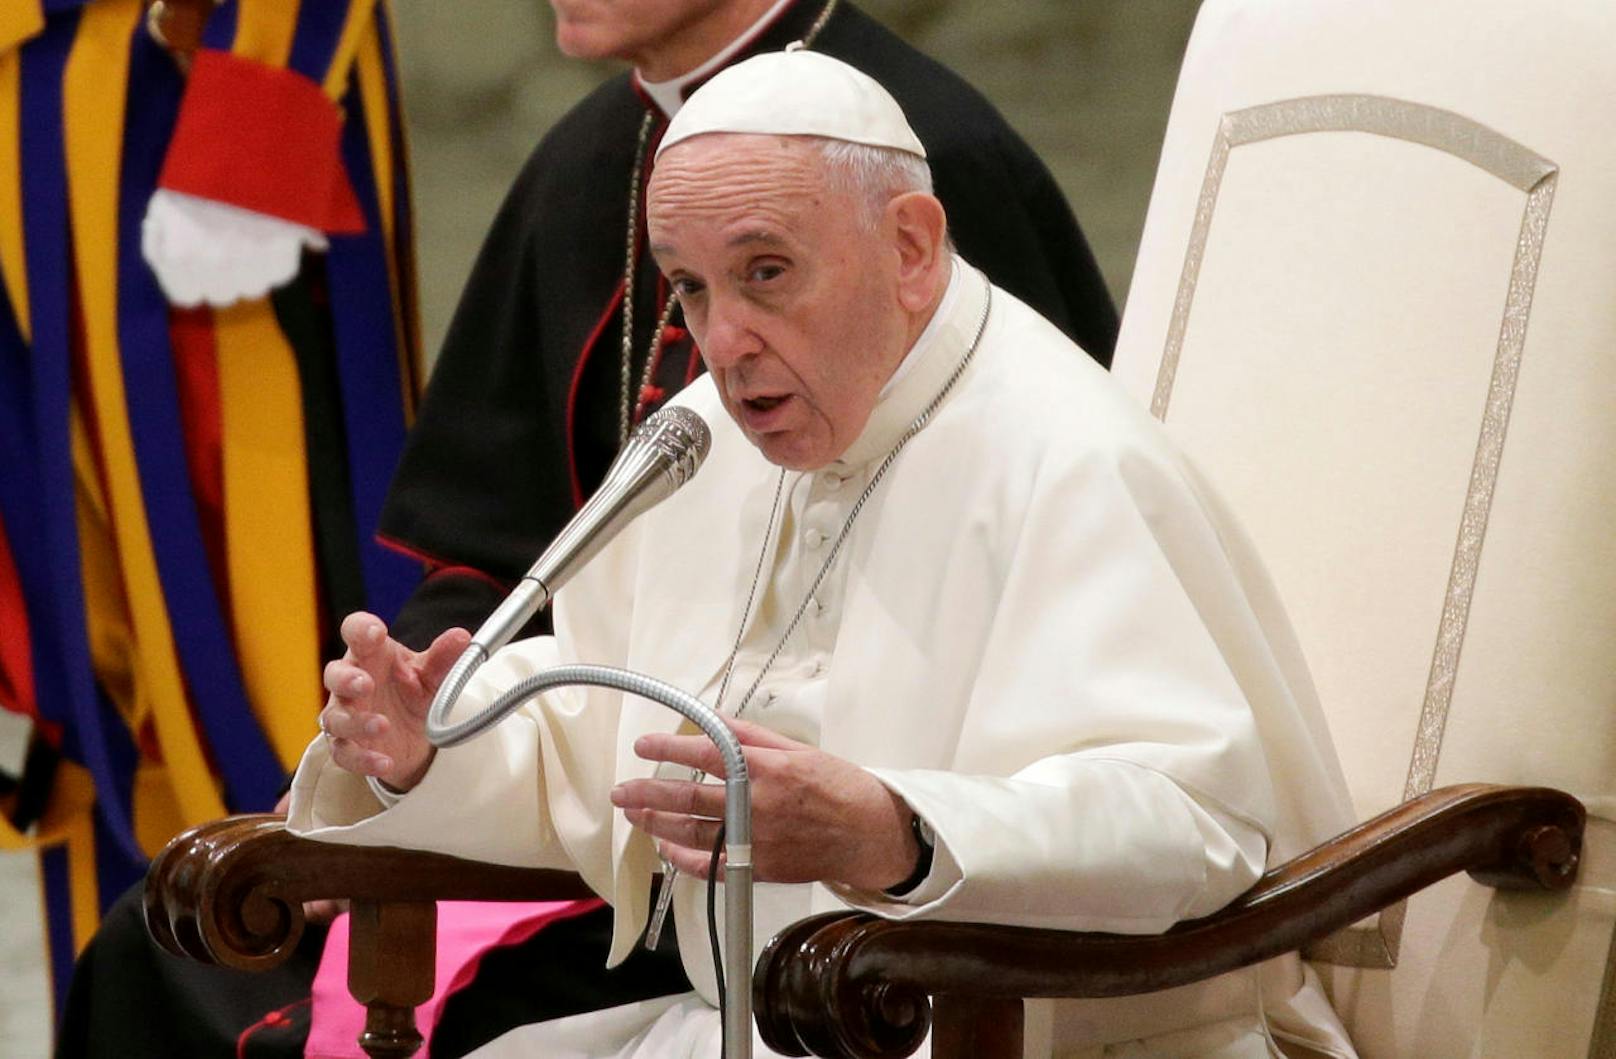 Seine Ansprache in diesem Jahr fokussierte sich auf die Wichtigkeit der diplomatischen Beziehungen des Vatikans.